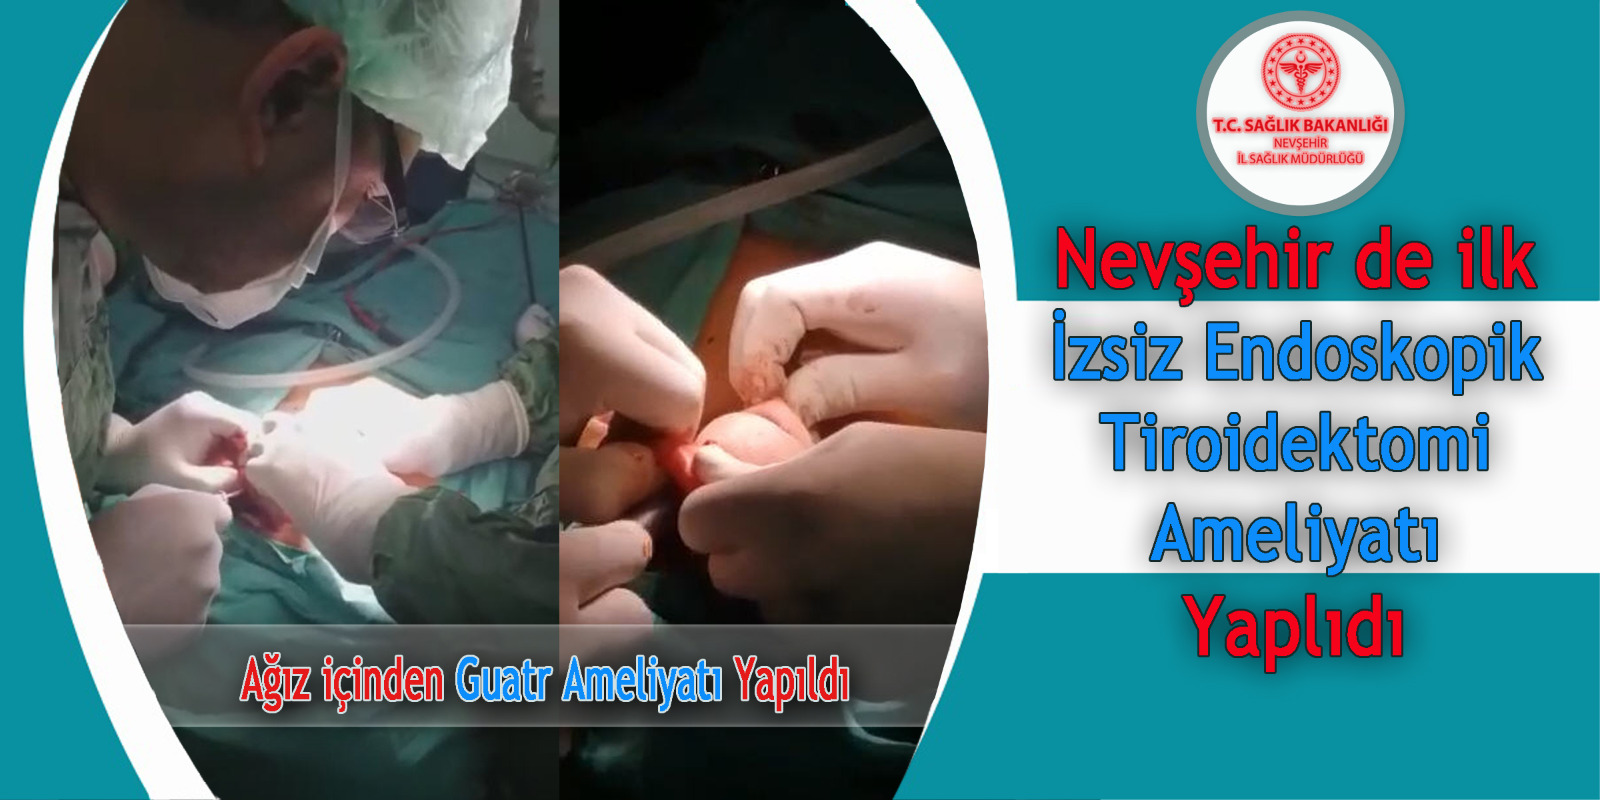 Nevşehir’de Bir İlk İzsiz Endoskopik Tiroidektomi (Ağız içinden Guatr Ameliyatı) Yapıldı